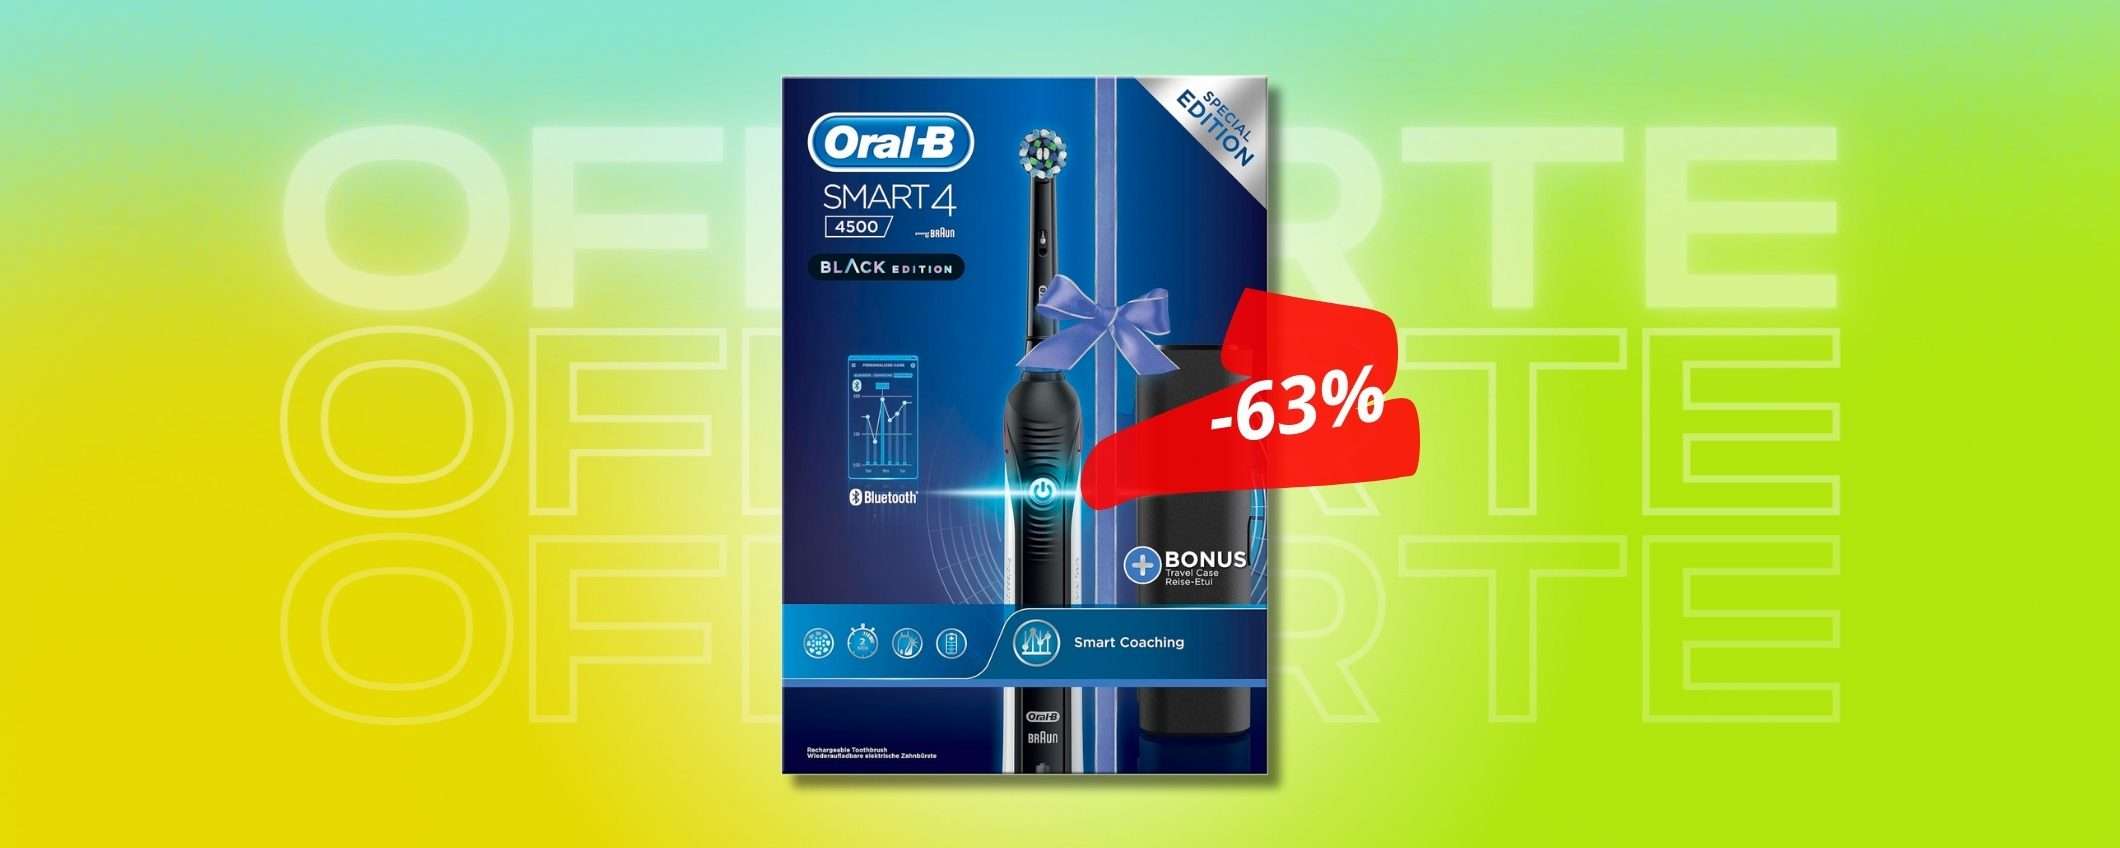 Crollo di prezzo per Oral-B sullo spazzolino elettrico SMART (-63%)